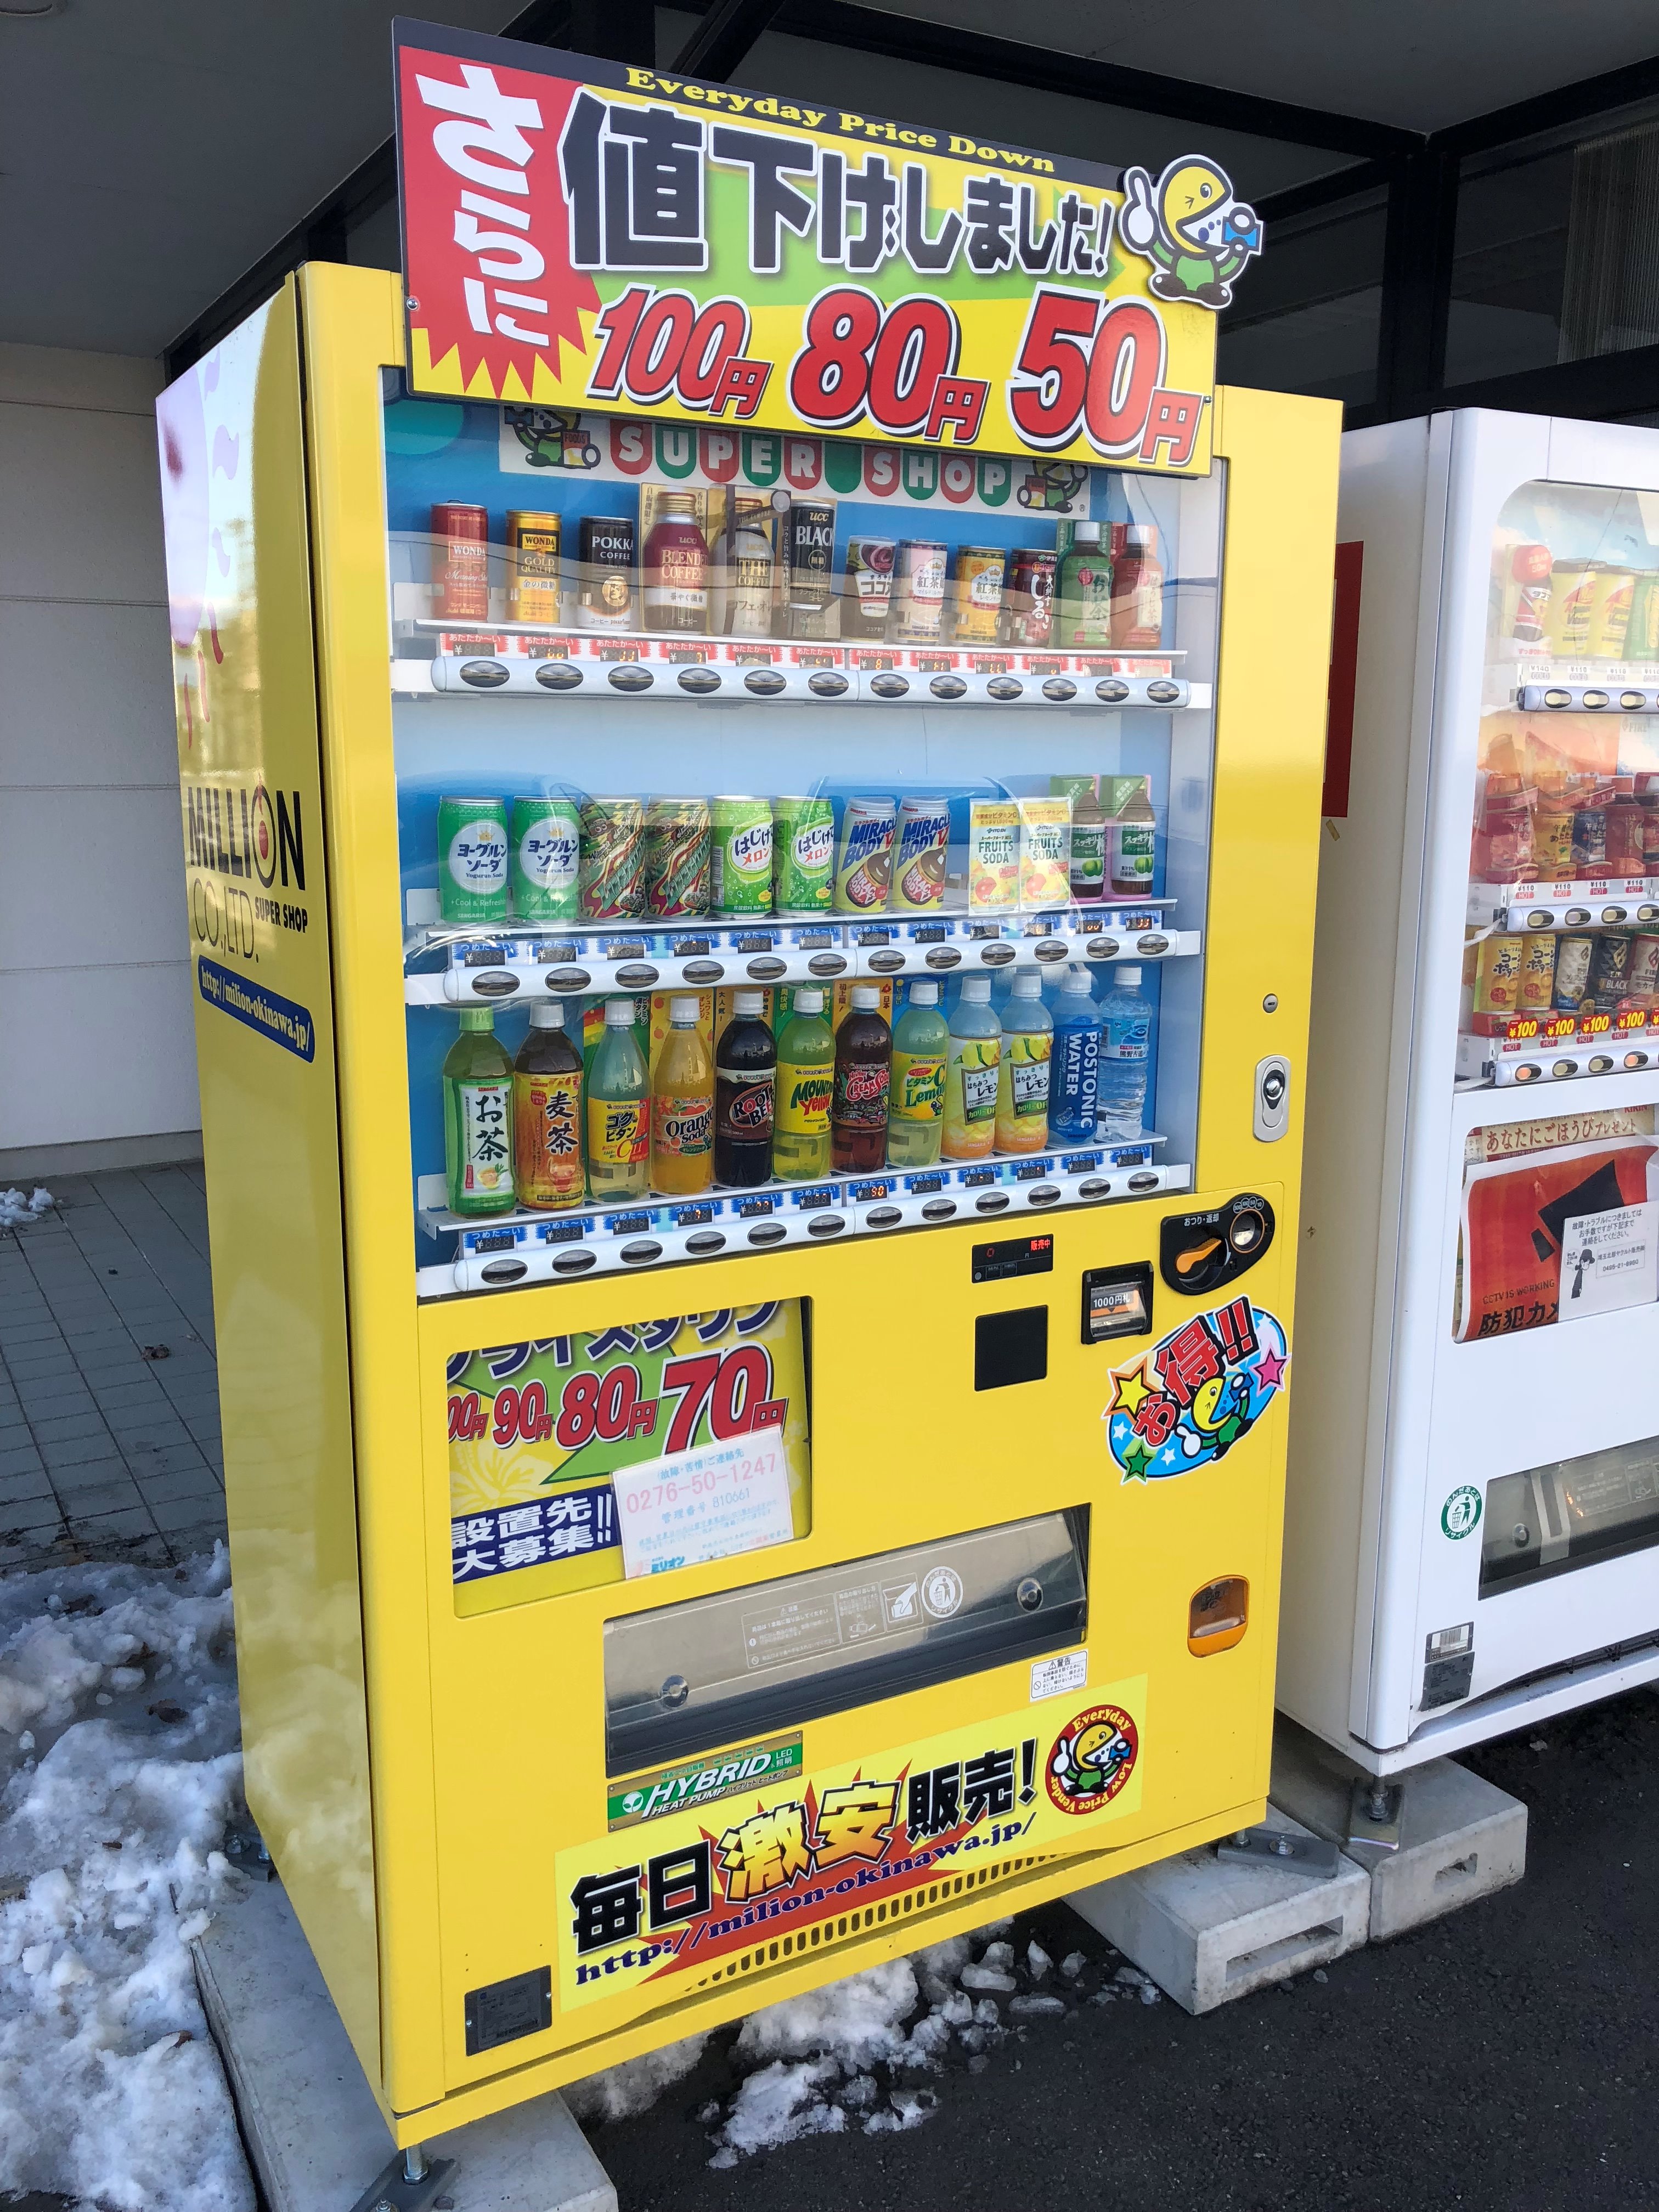 もじゃくん 近くで沖縄からやってきた黄色い自販機発見 ミリオン自販機 ミリオンスーパーショップ T Co L6q8pju9to Twitter